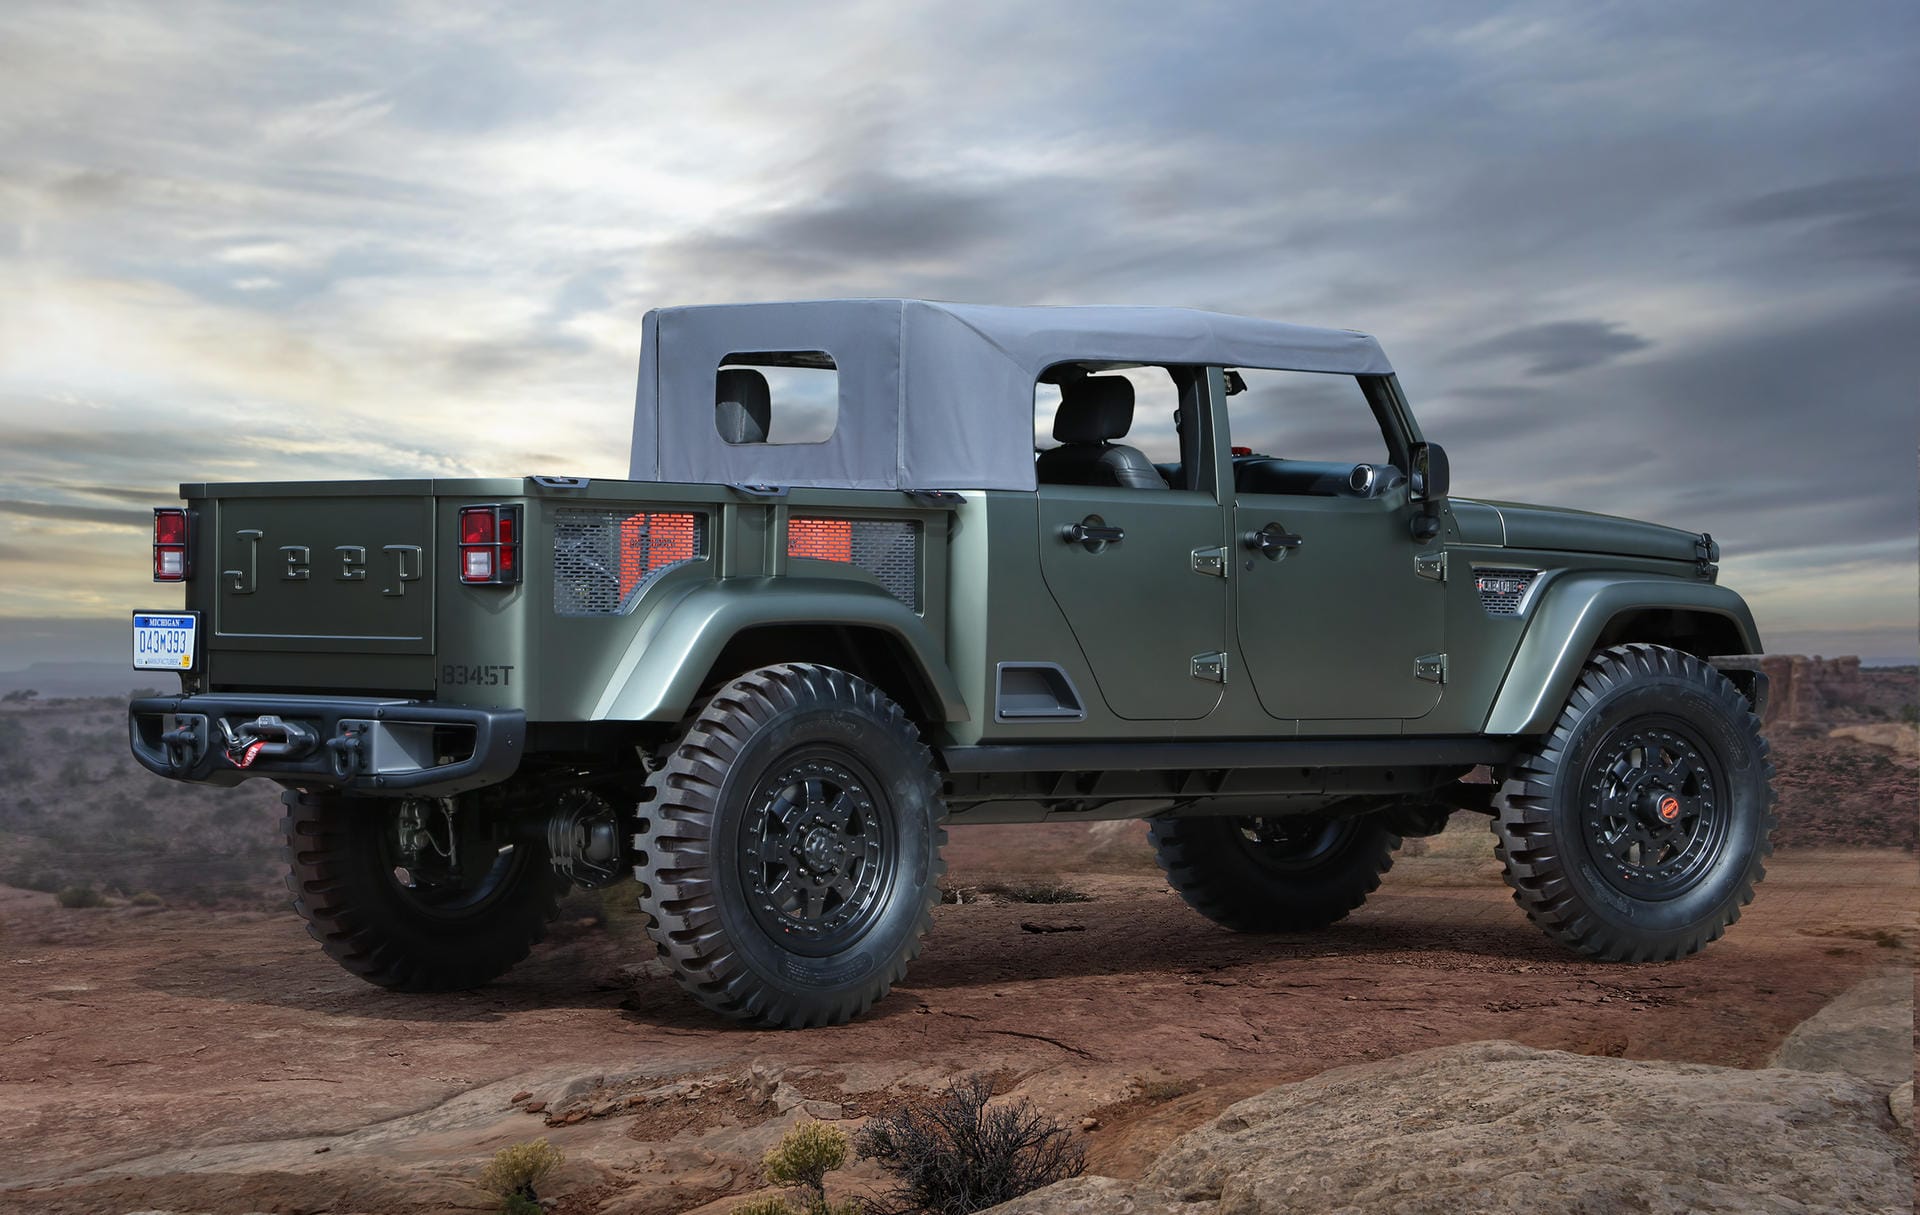 Der Jeep Crew Chief 715 Concept ist eine Hommage an den Jeep Kaiser M715, ein offenes Militär-Fahrzeug. Angetrieben wird die Studie von einem 3,6-Liter Pentastar V6.